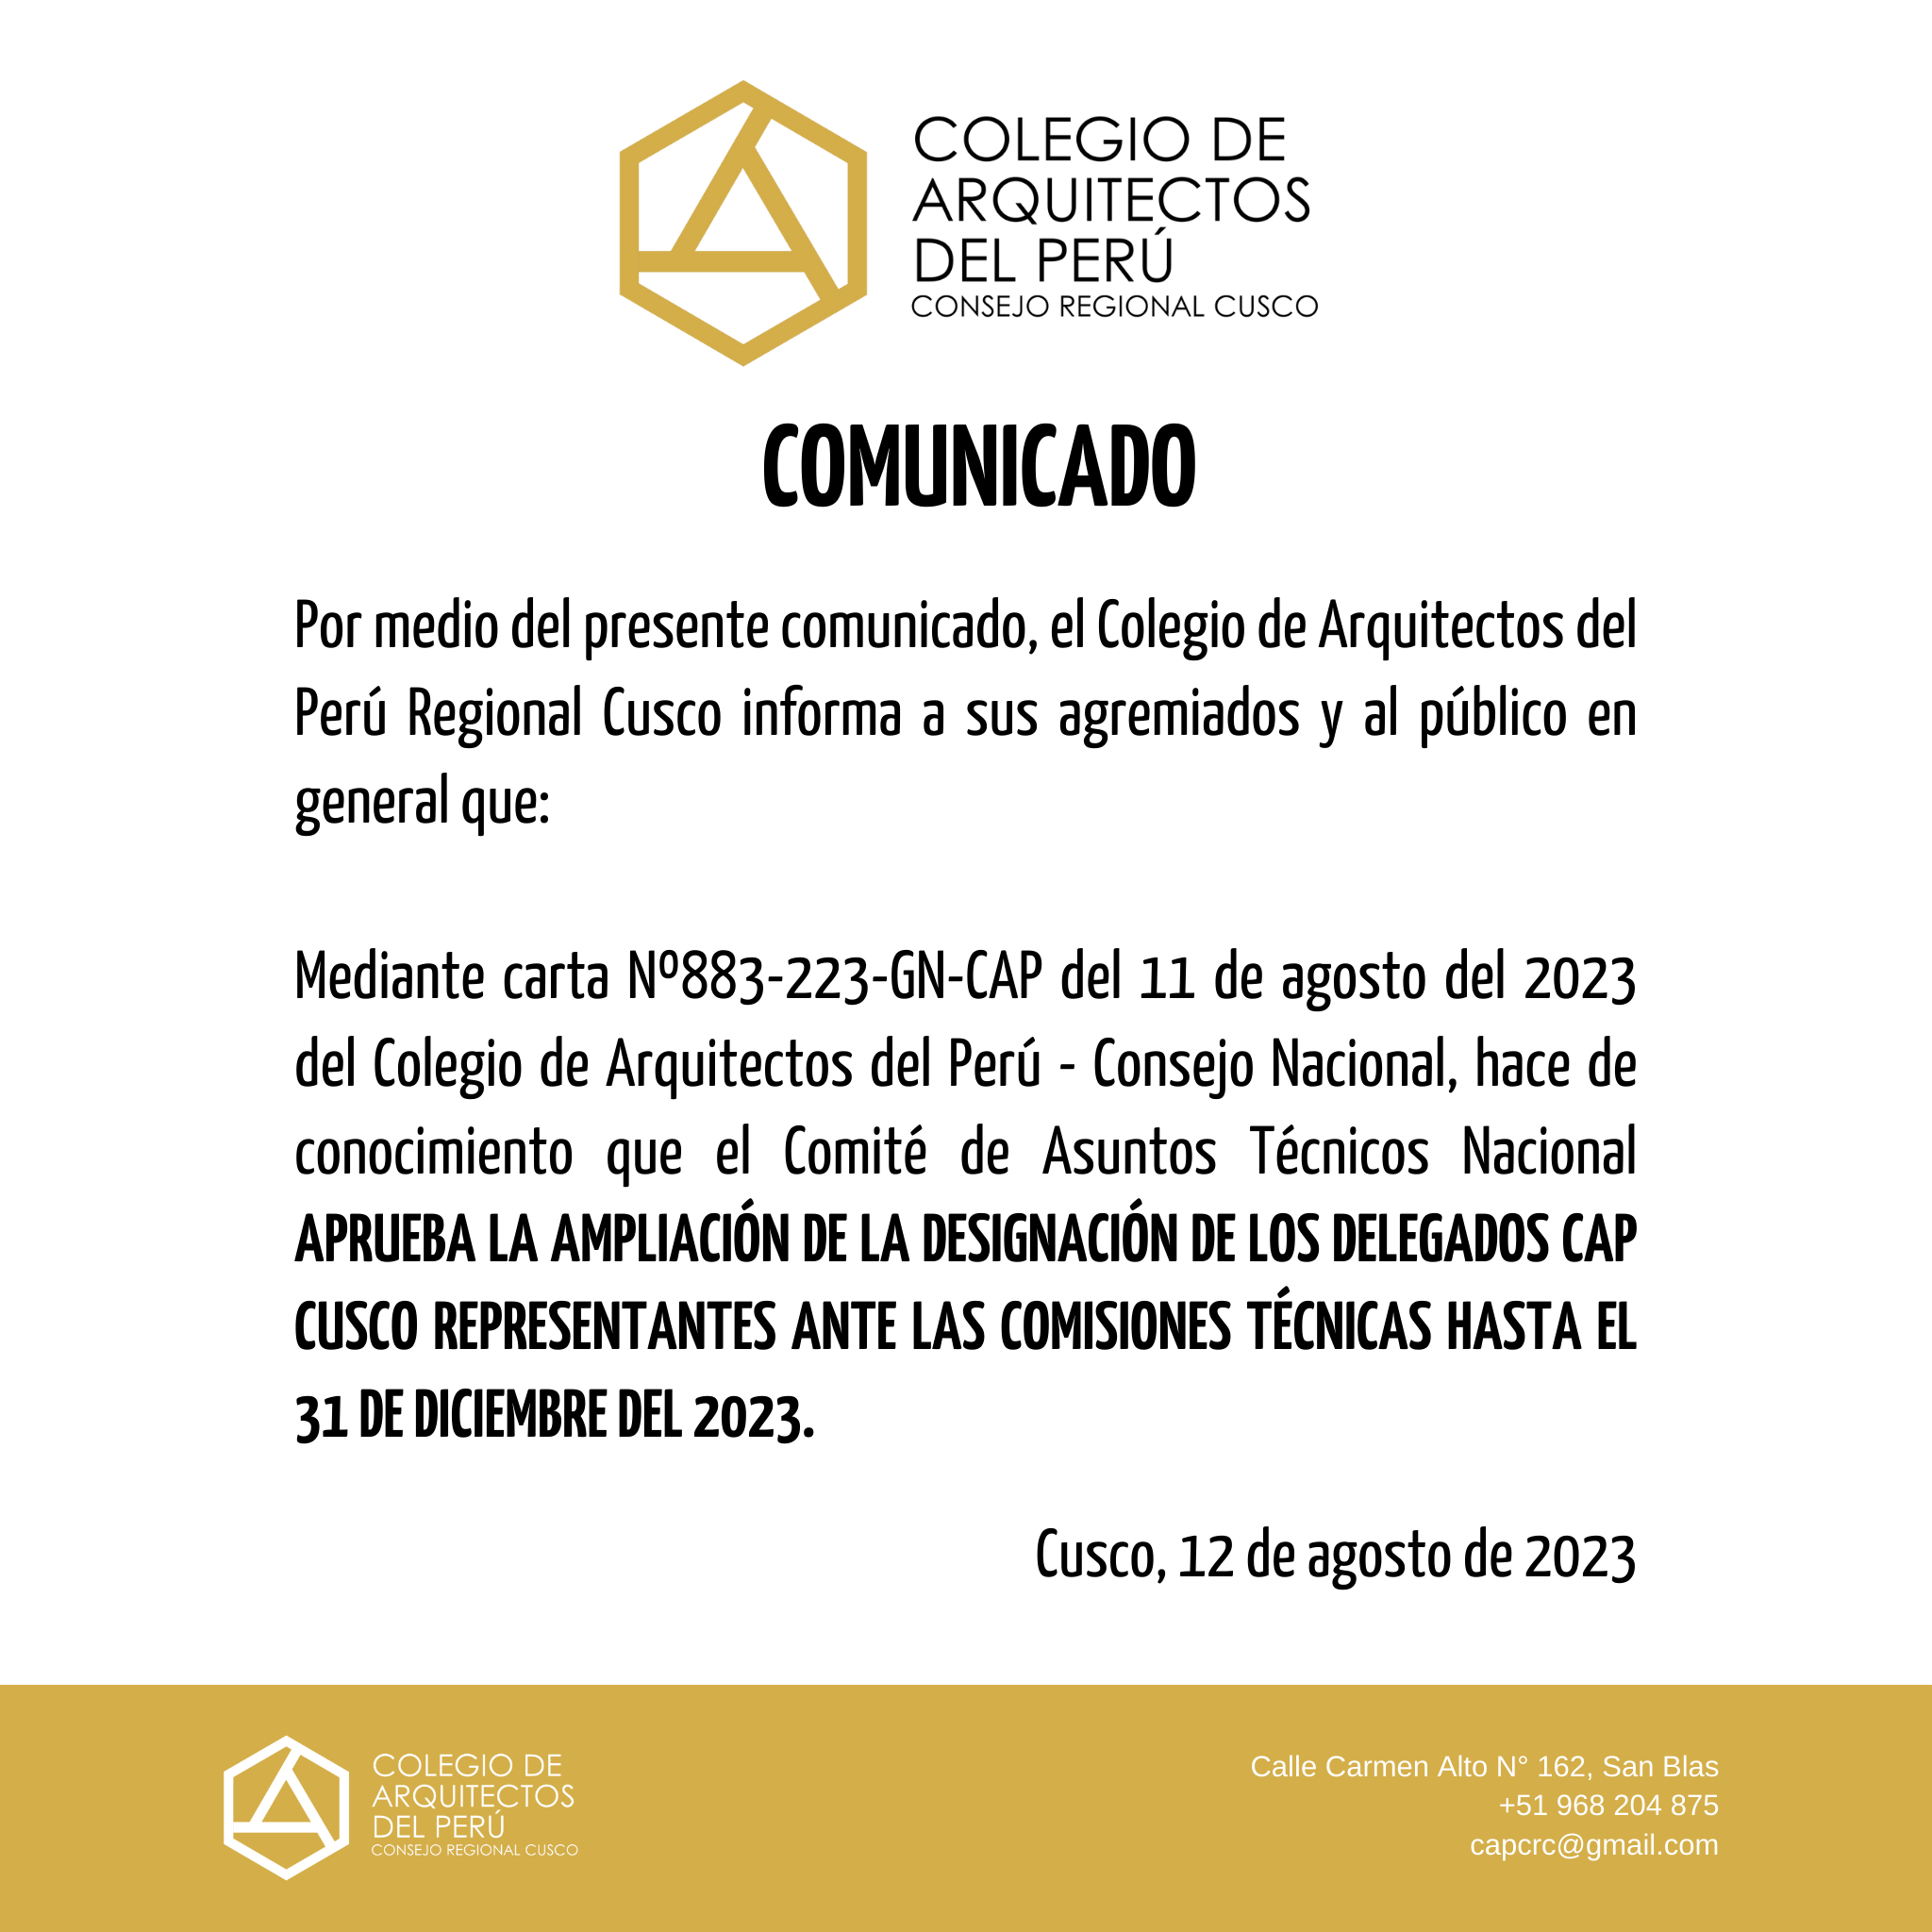 COMUNICADO - AMPLIACIÓN DE LA DESIGNACIÓN DE LOS DELEGADOS CAP CUSCO